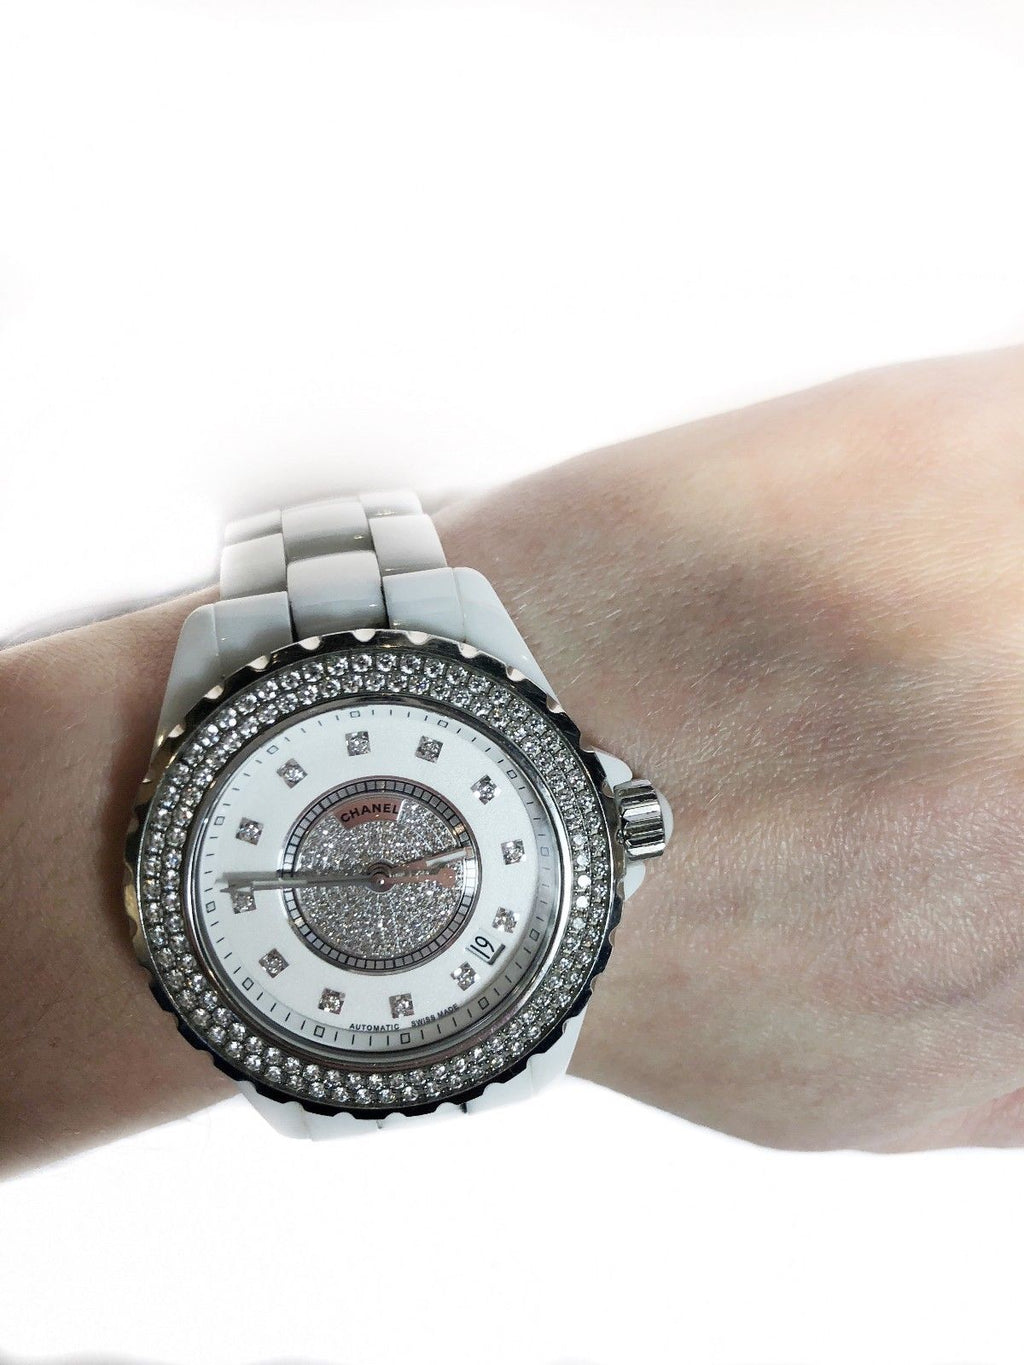 CHANEL J12 Automatic Ceramic Lady's Watch w/ 12 Diamonds!